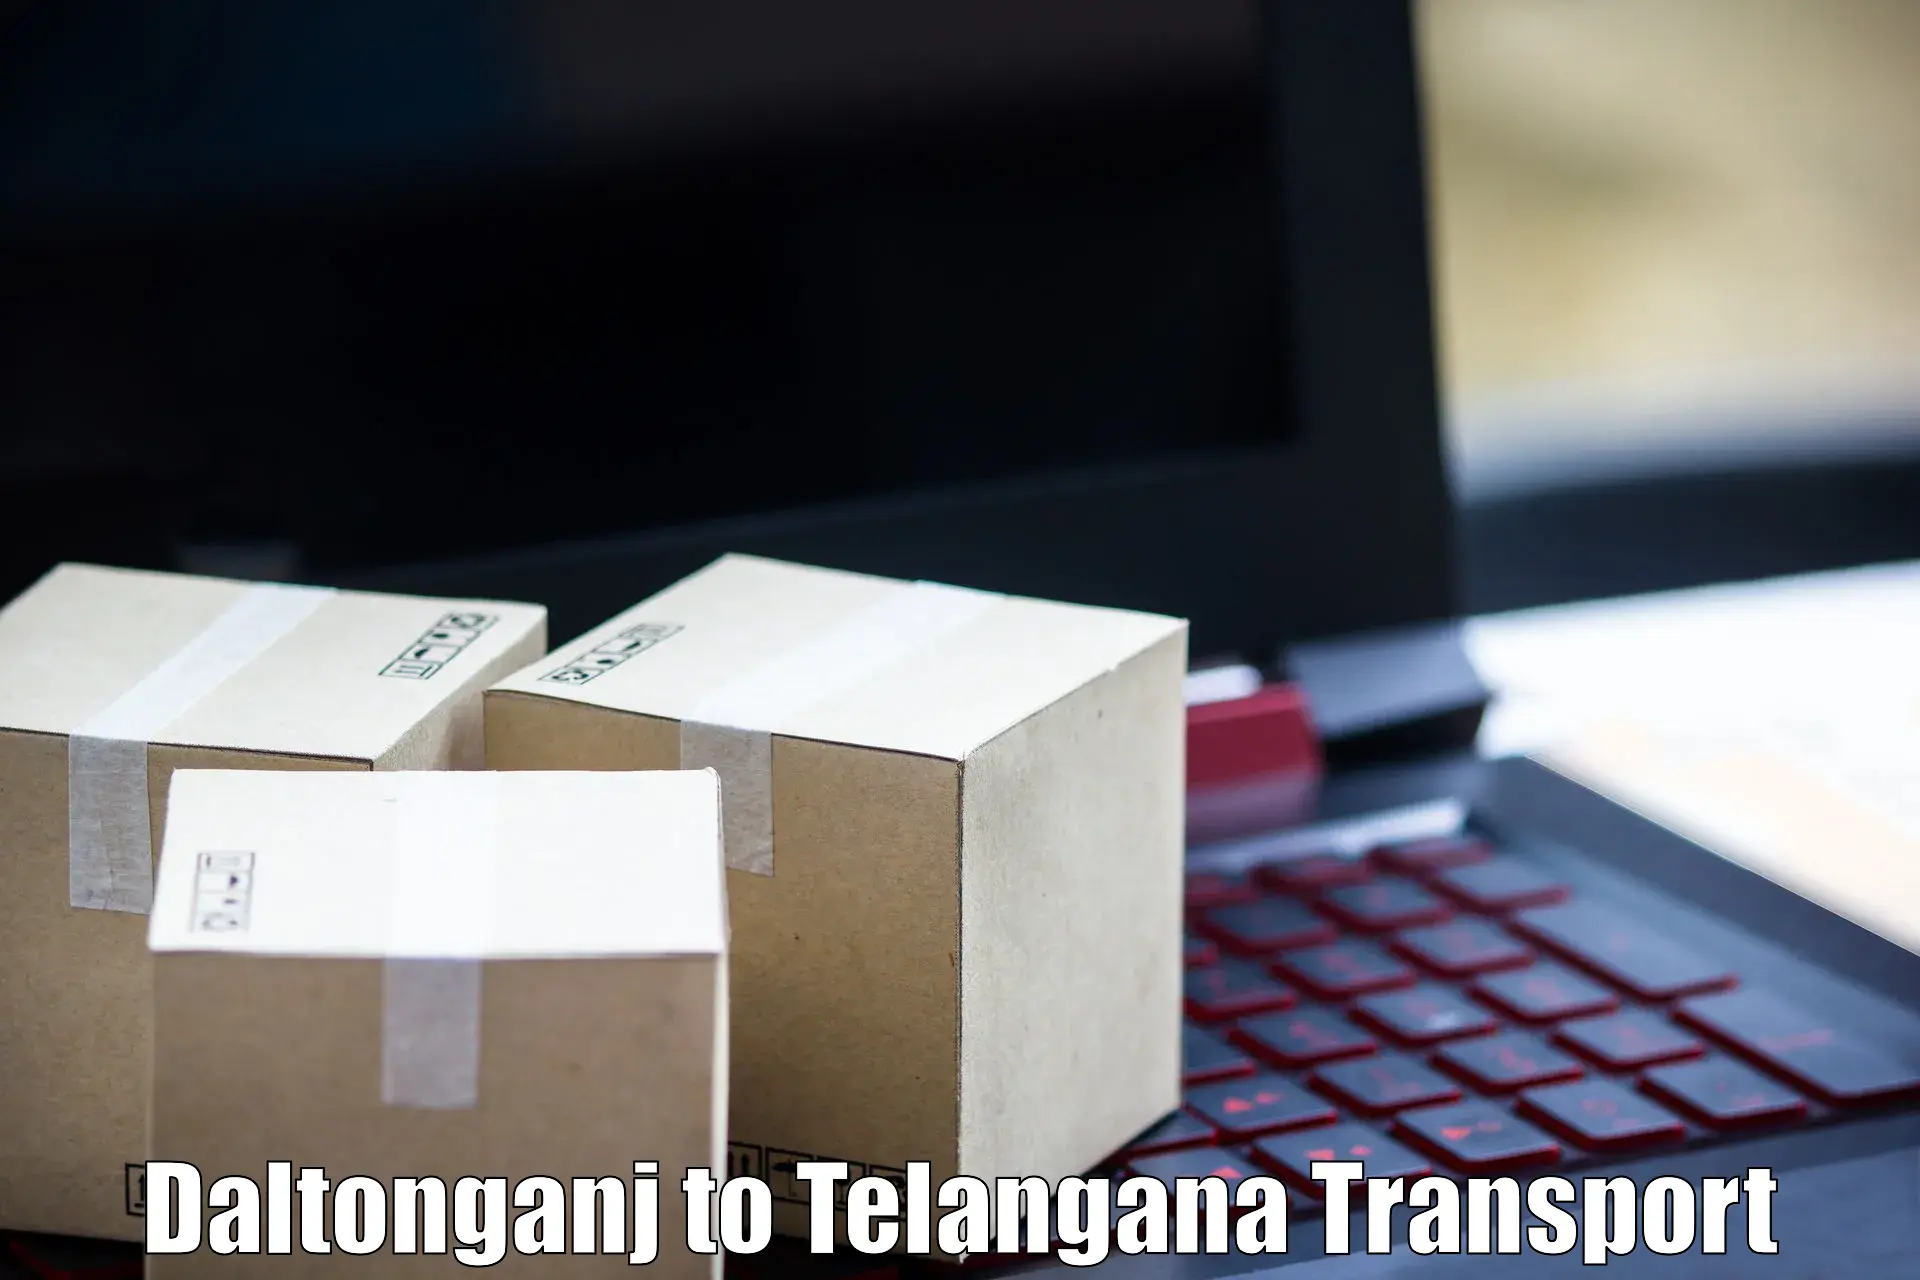 Online transport service Daltonganj to Bijinapalle